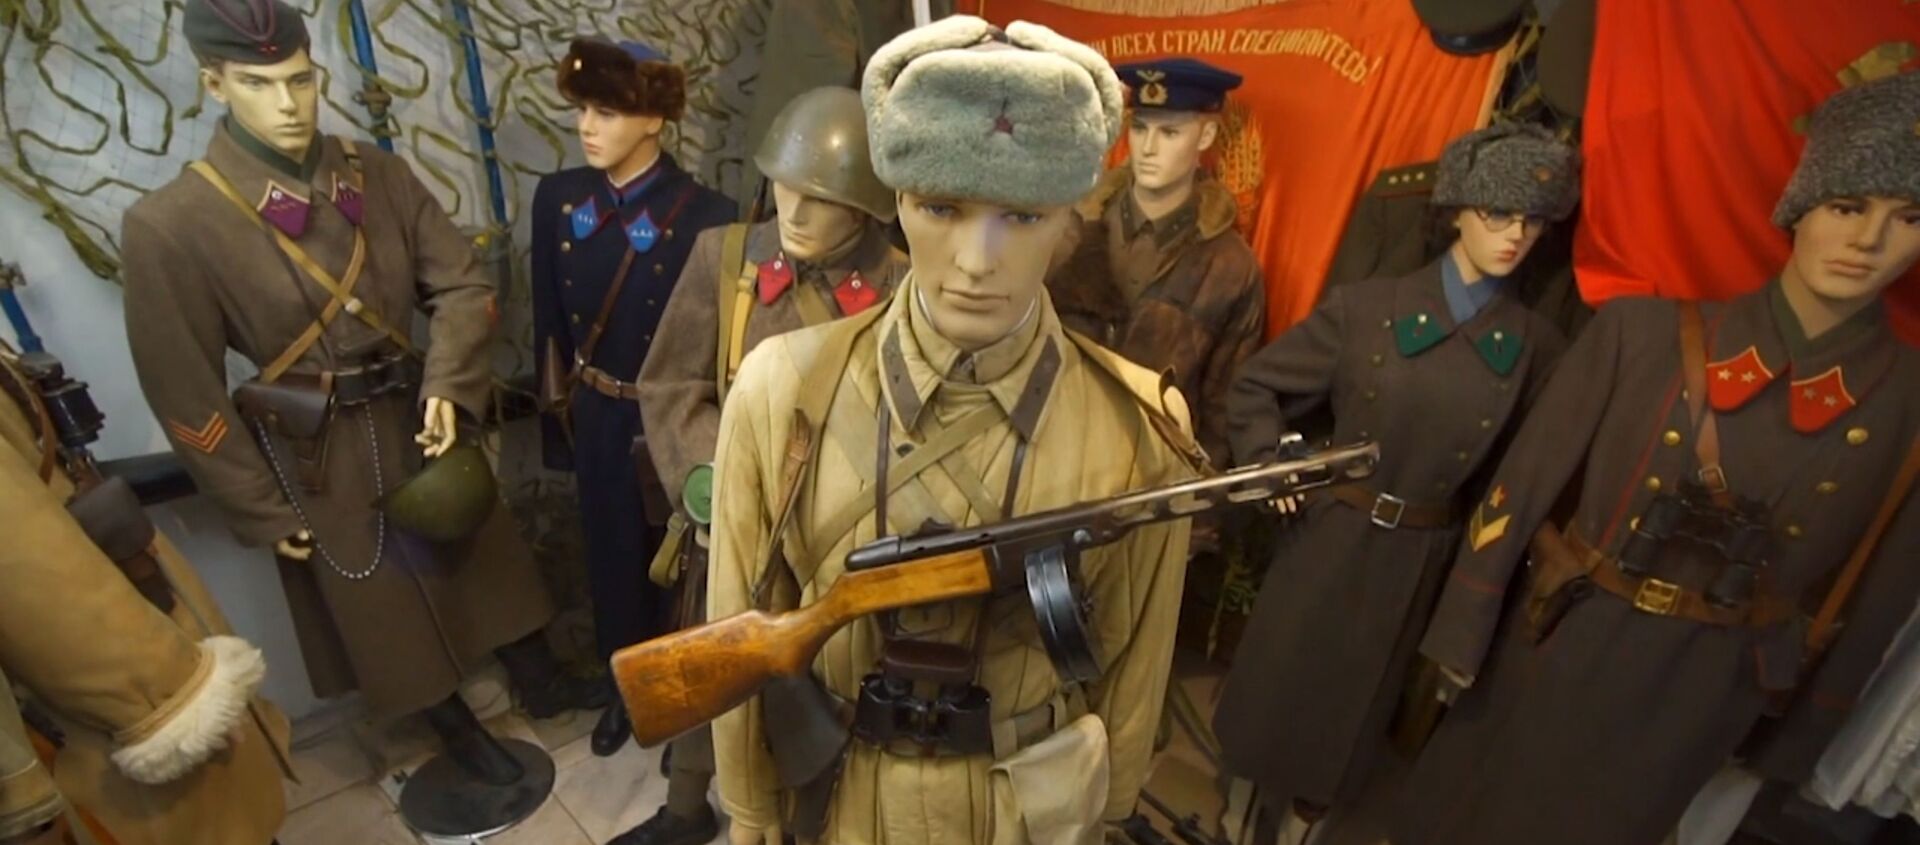 Оружейная коллекция времен Сталинградской битвы - Sputnik Азербайджан, 1920, 08.02.2019